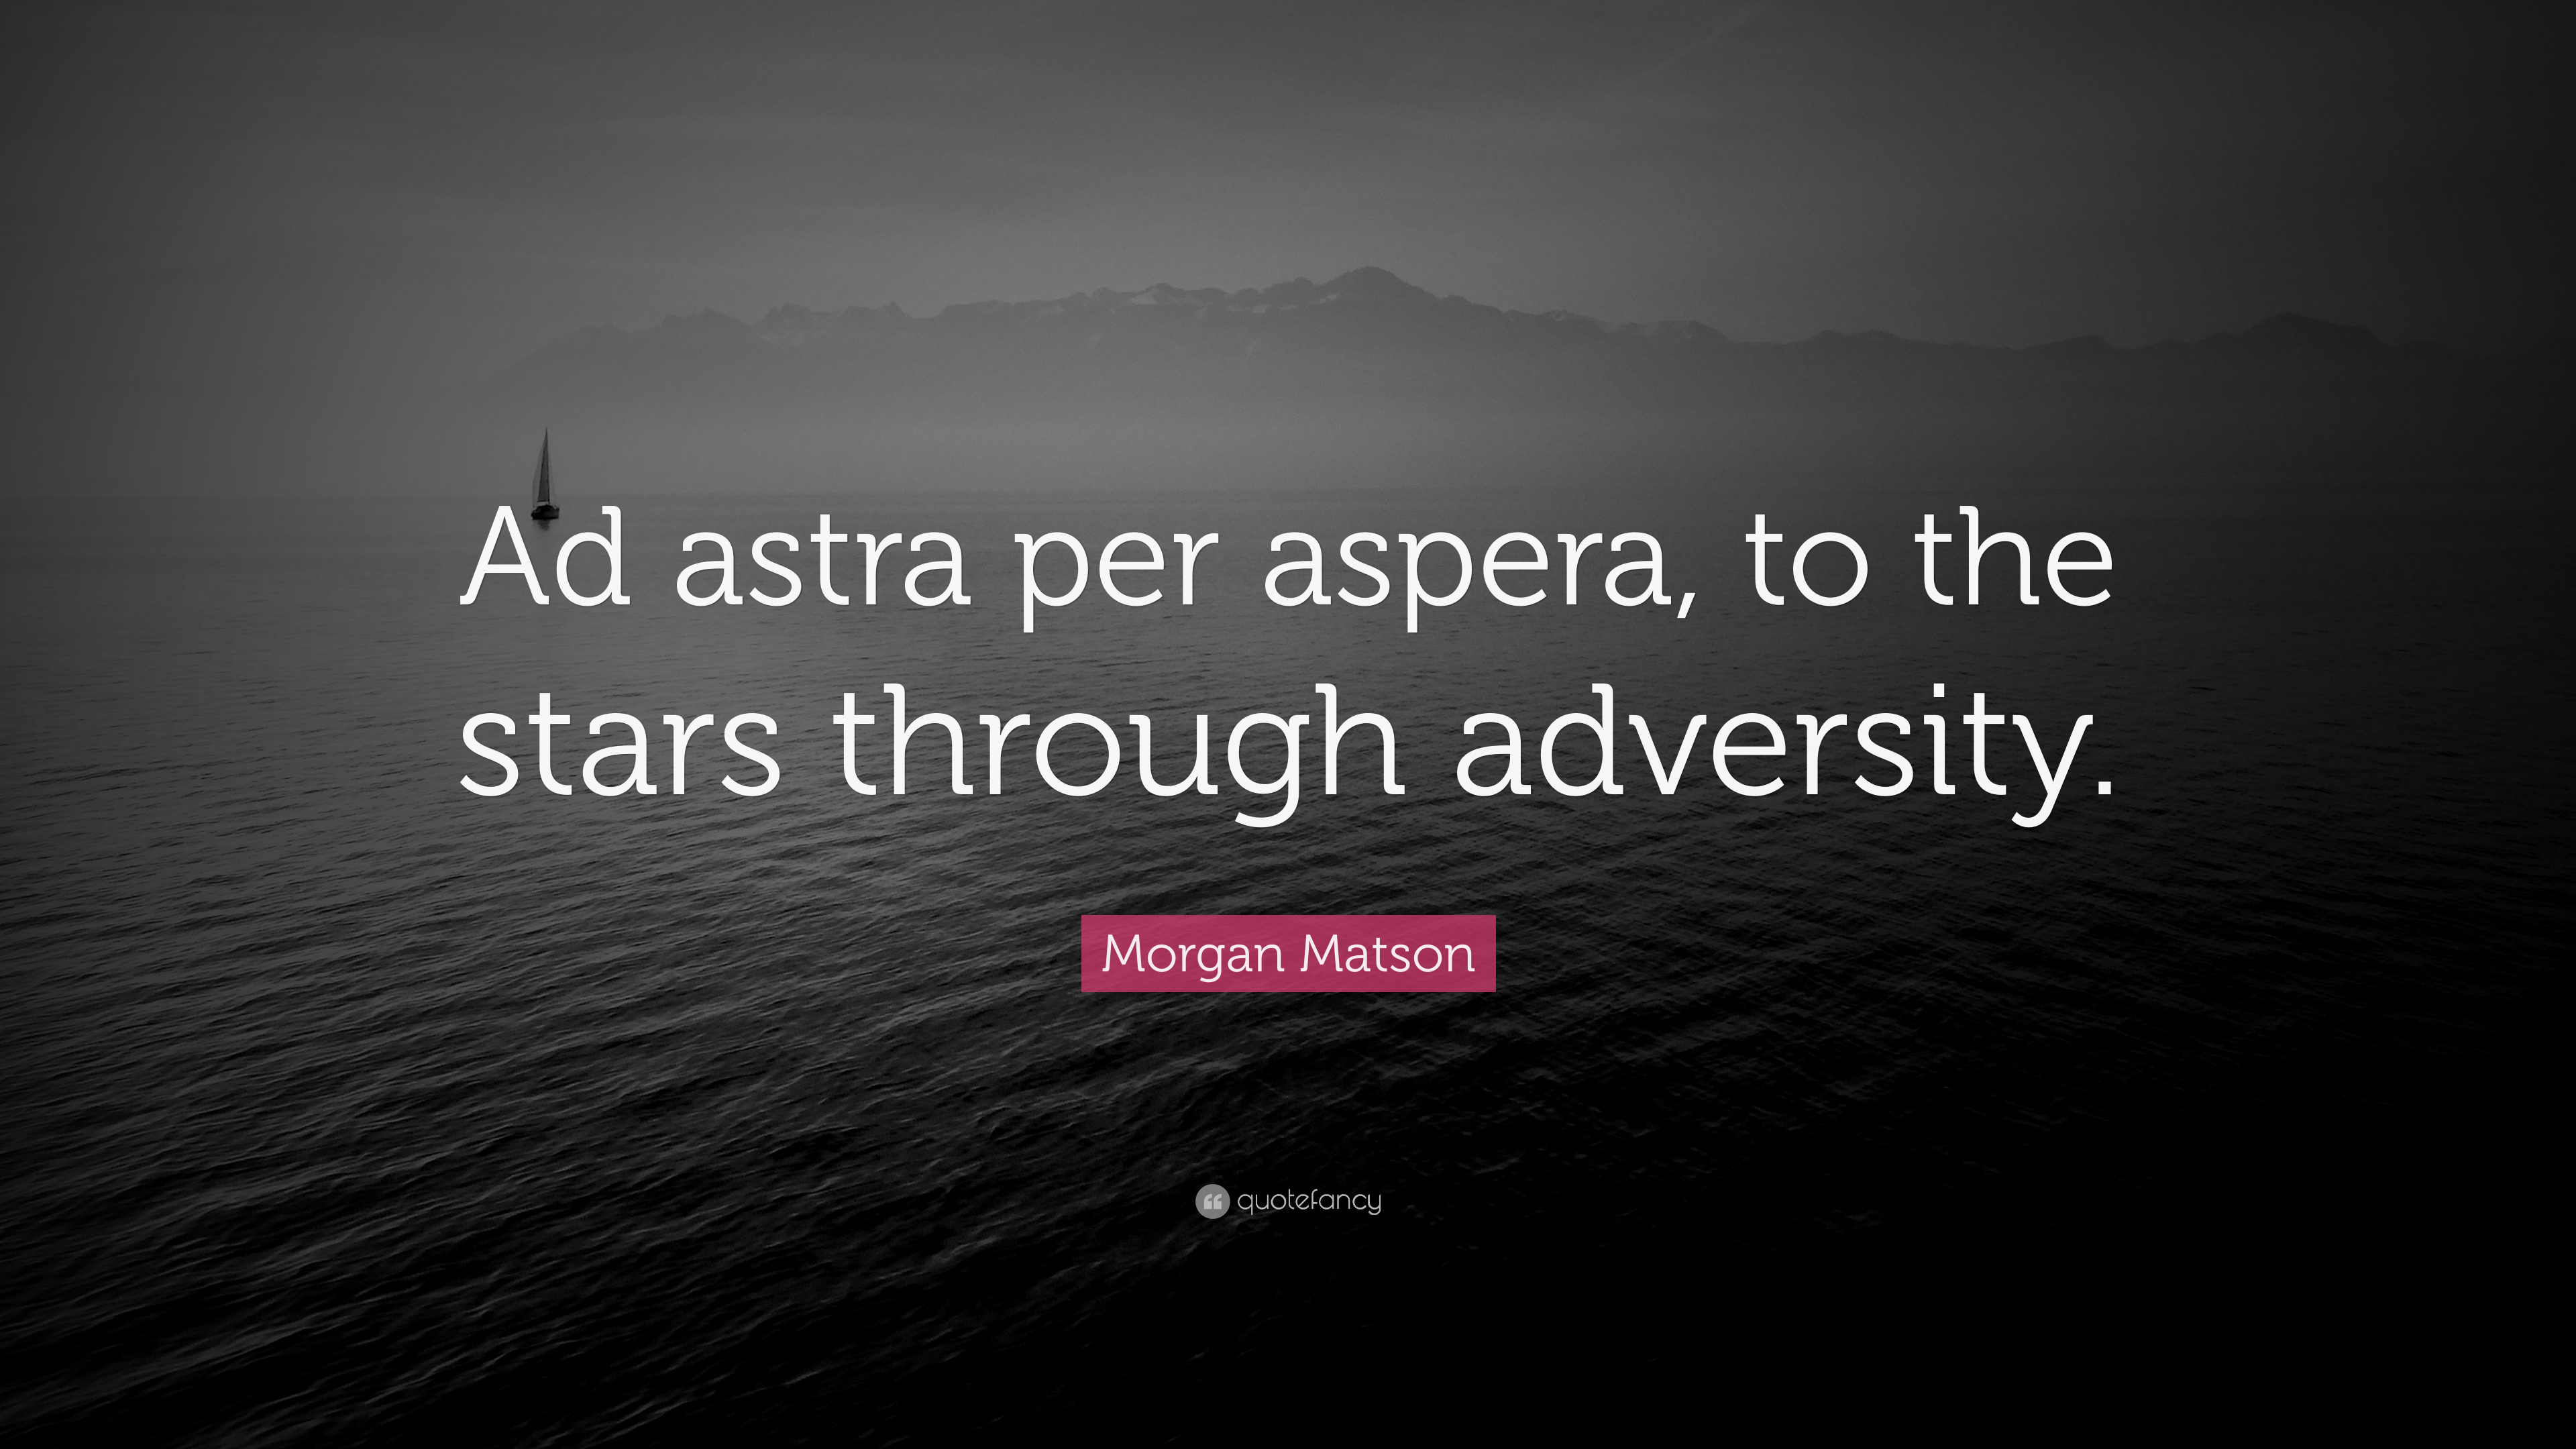 Morgan Matson Quote: “Ad astra per aspera, to the stars